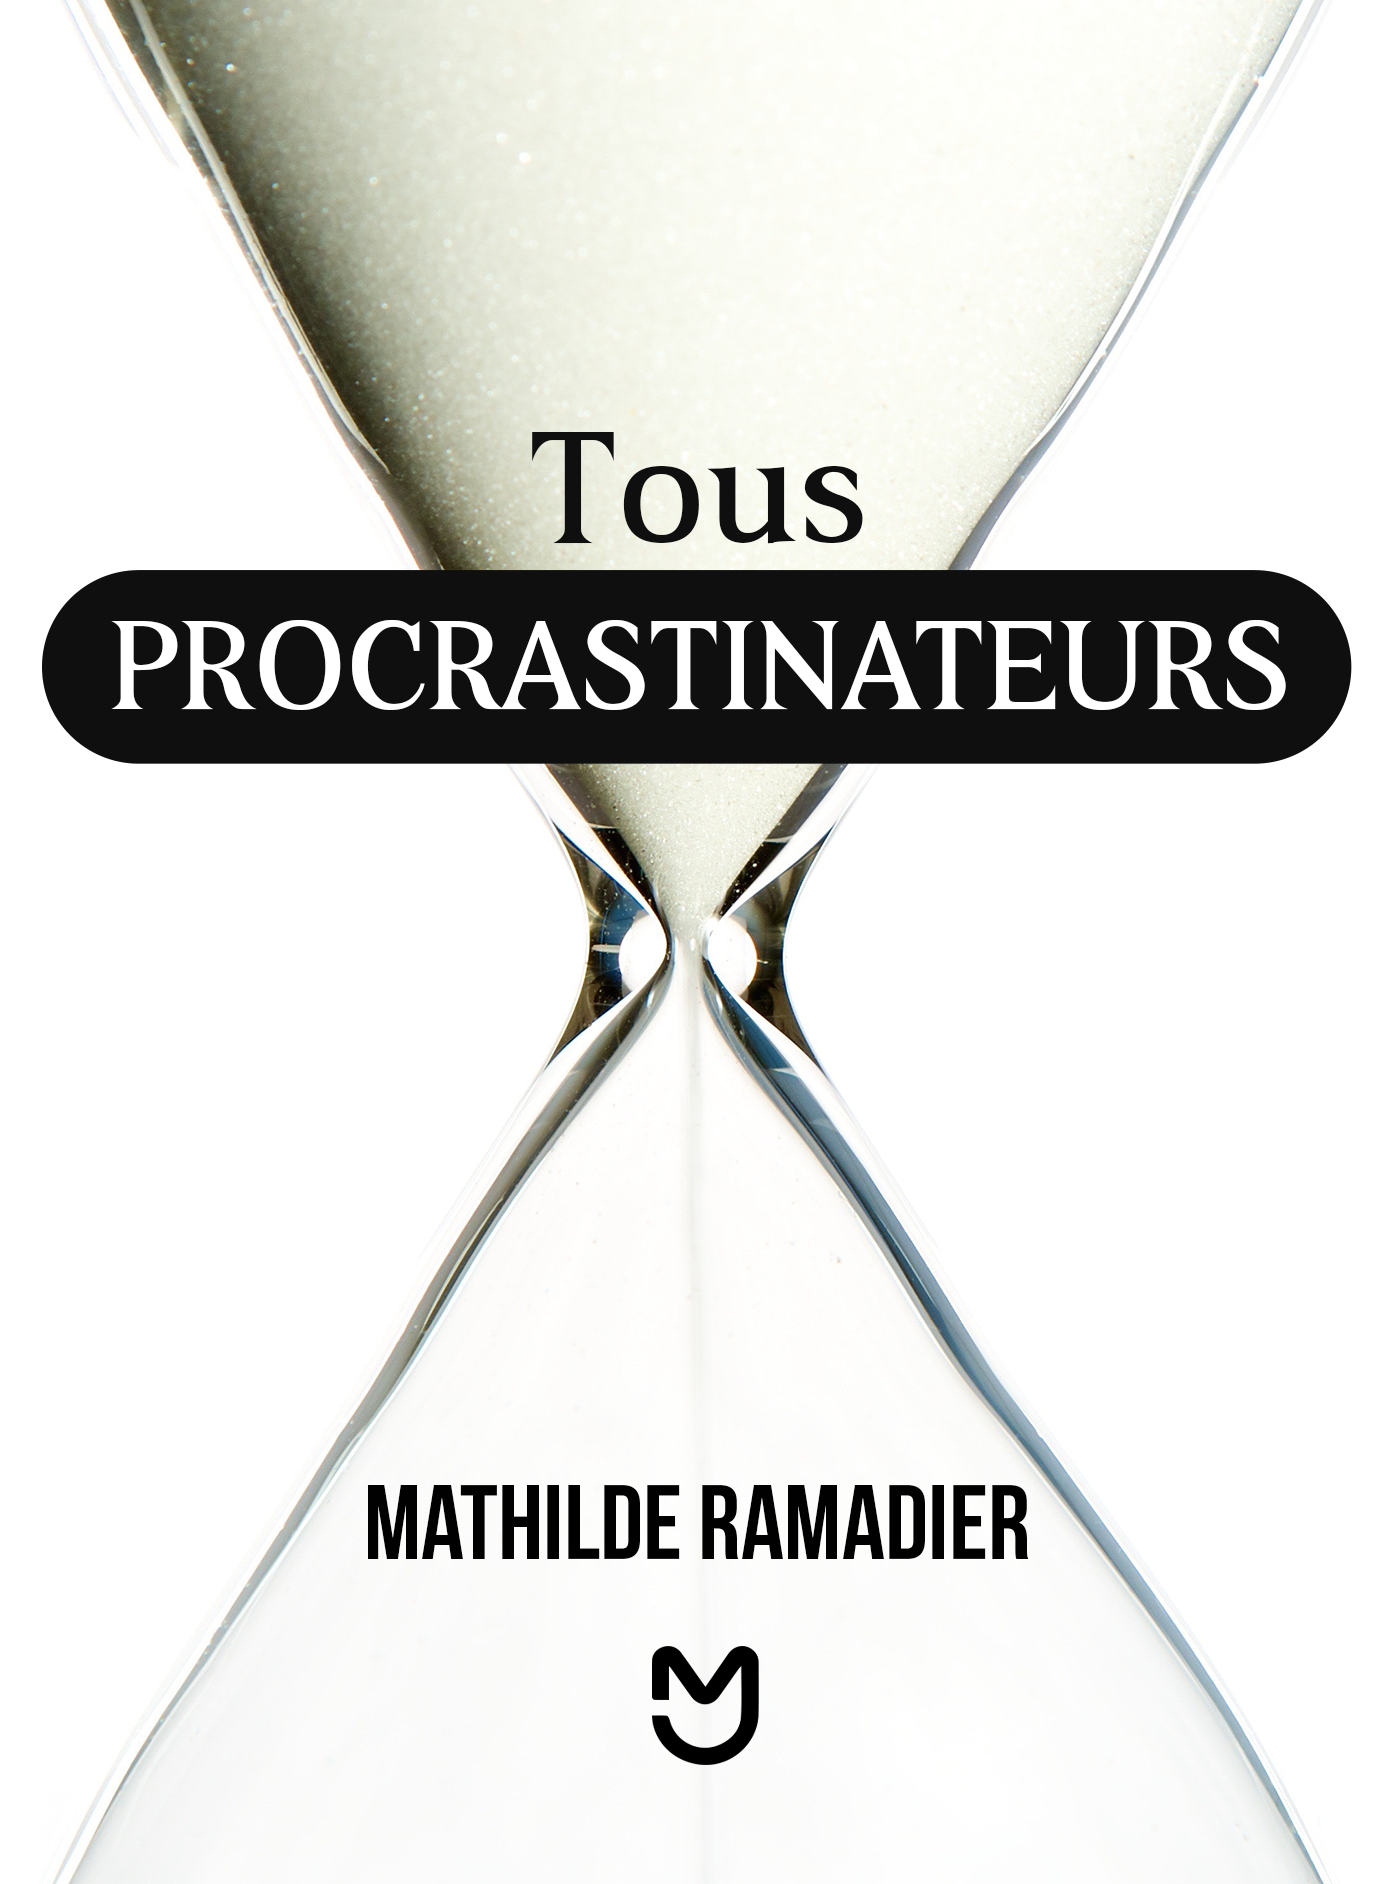 Tous procrastinateurs